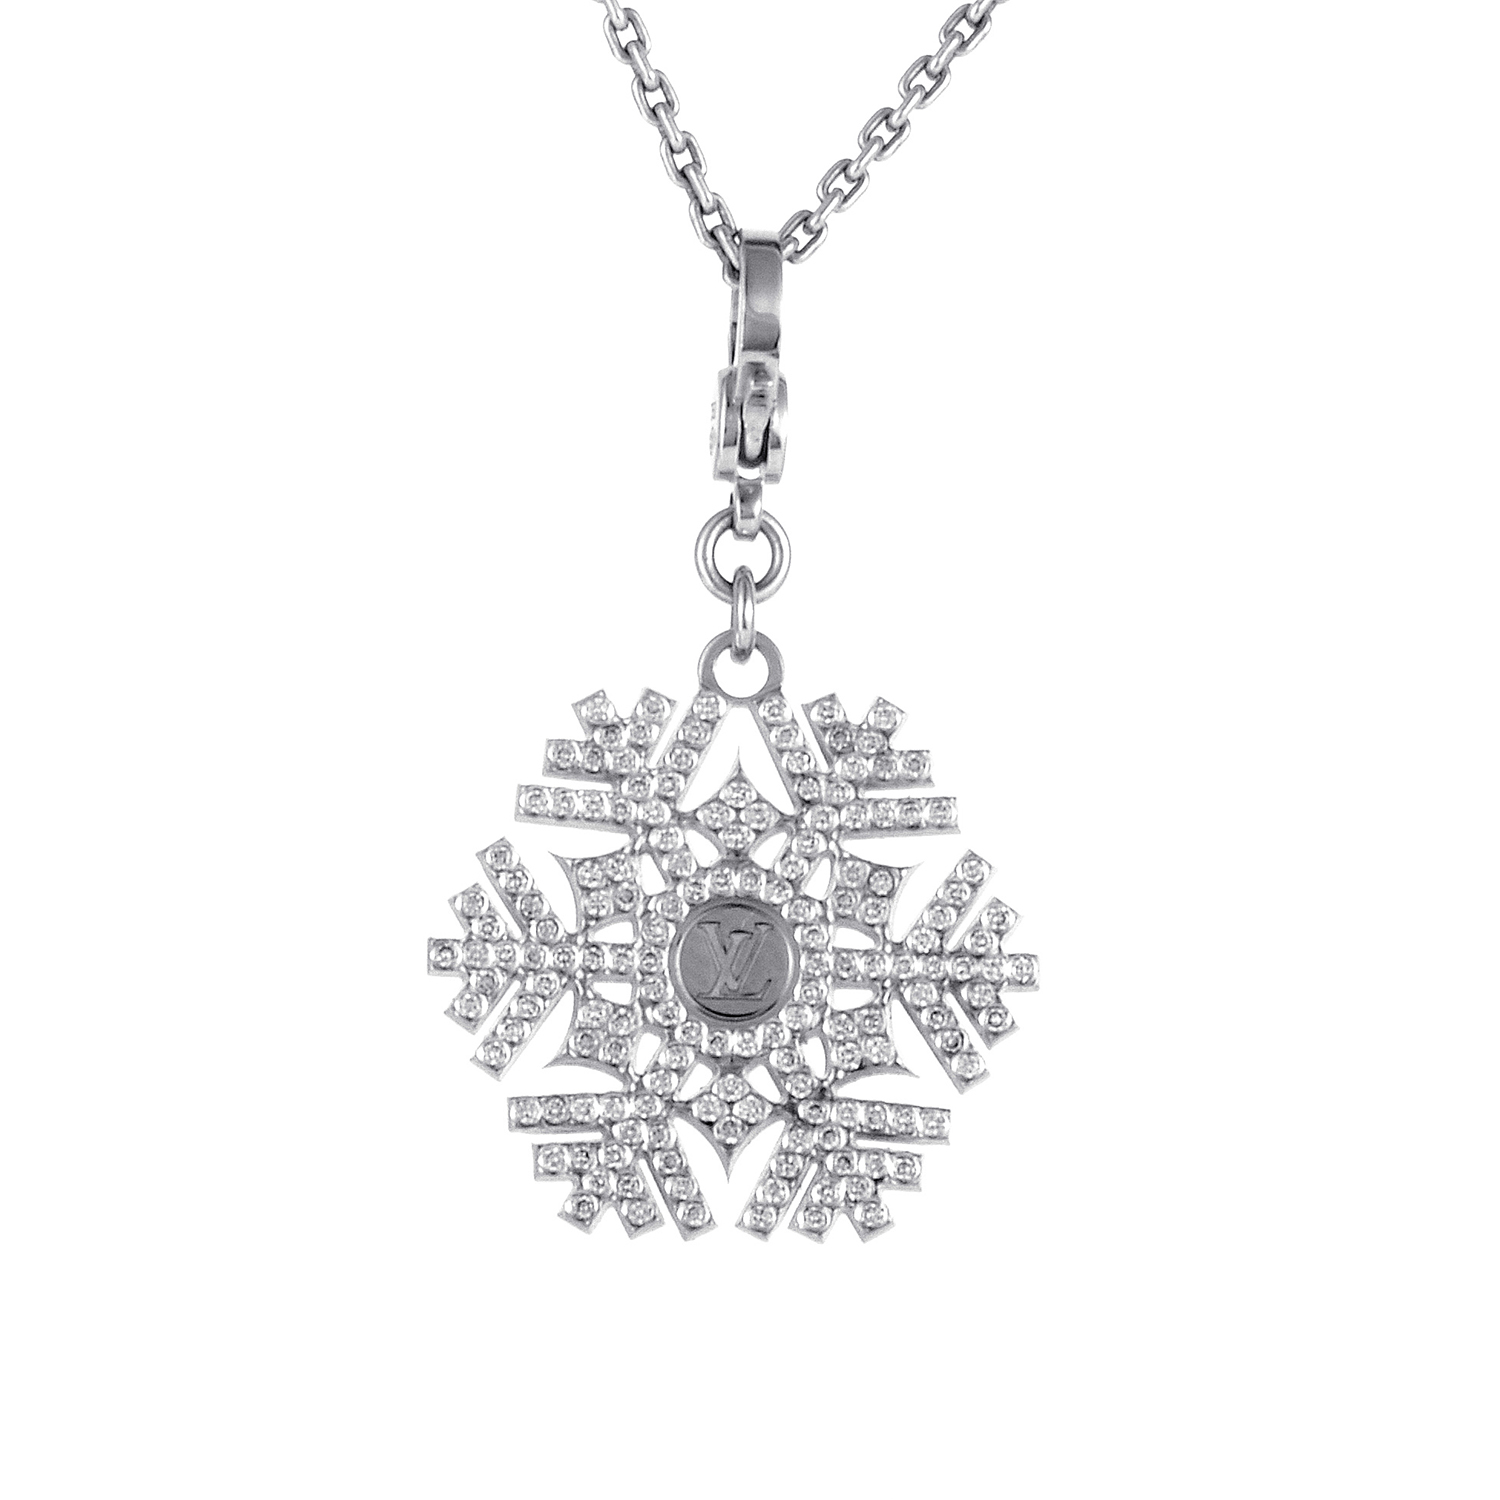 Louis Vuitton 18K White Gold Diamond Snowflake Pendant Necklace | eBay